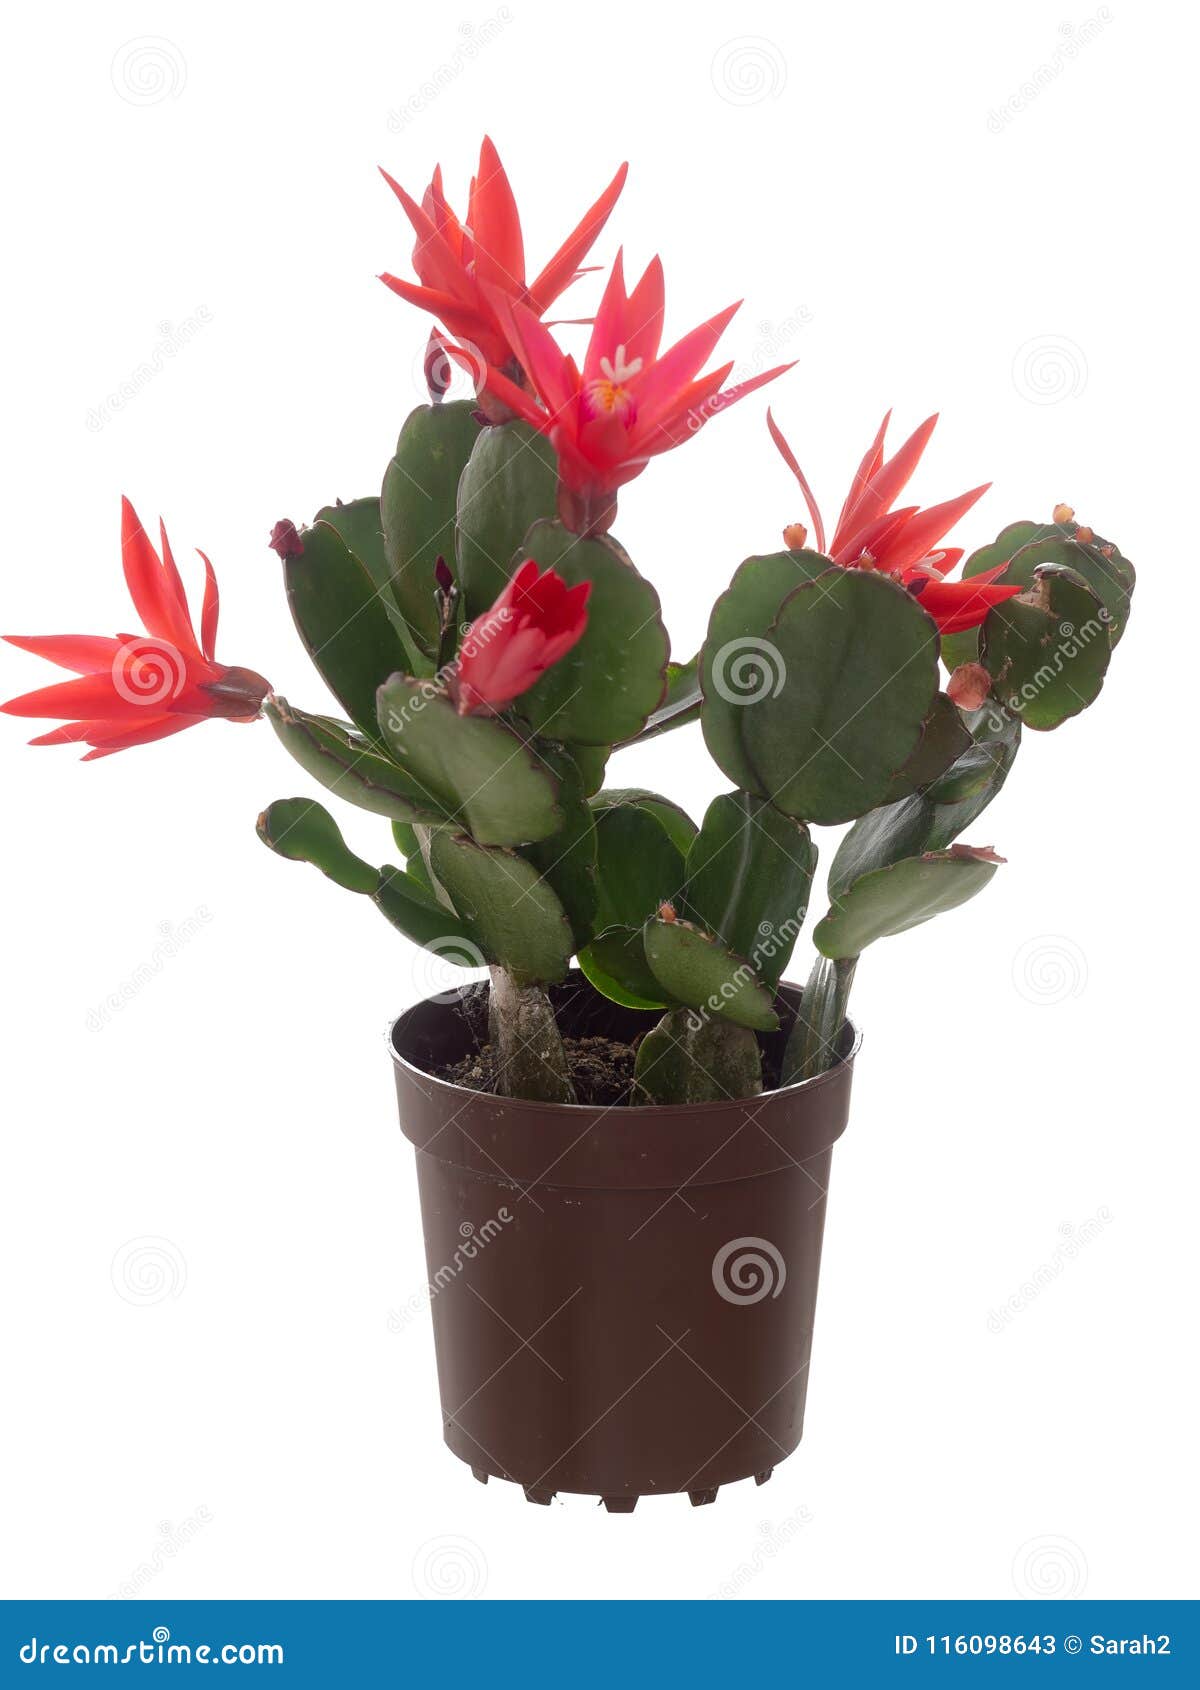 Cactus Di Natale.Cactus Di Natale Della Schlumbergera Aka Isolato Su Bianco Immagine Stock Immagine Di Popolare Plastica 116098643